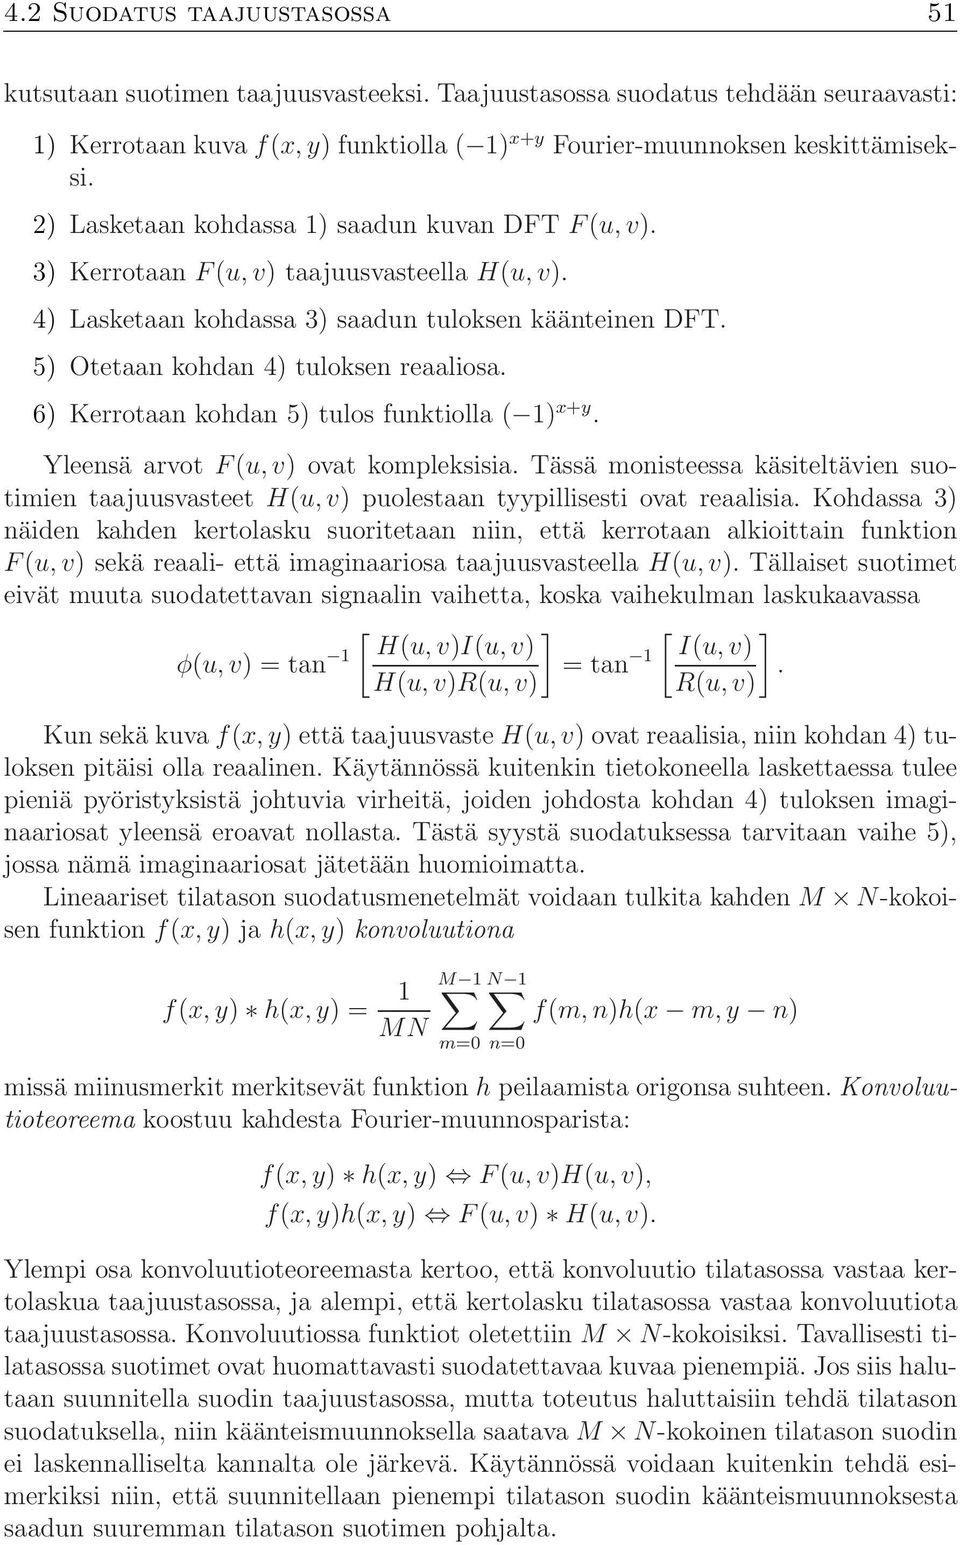 6) Kerrotaan kohdan 5) tulos funktiolla ( 1) x+y. Yleensä arvotf (u, v) ovat kompleksisia. Tässä monisteessa käsiteltävien suotimien taajuusvasteet H(u, v) puolestaan tyypillisesti ovat reaalisia.